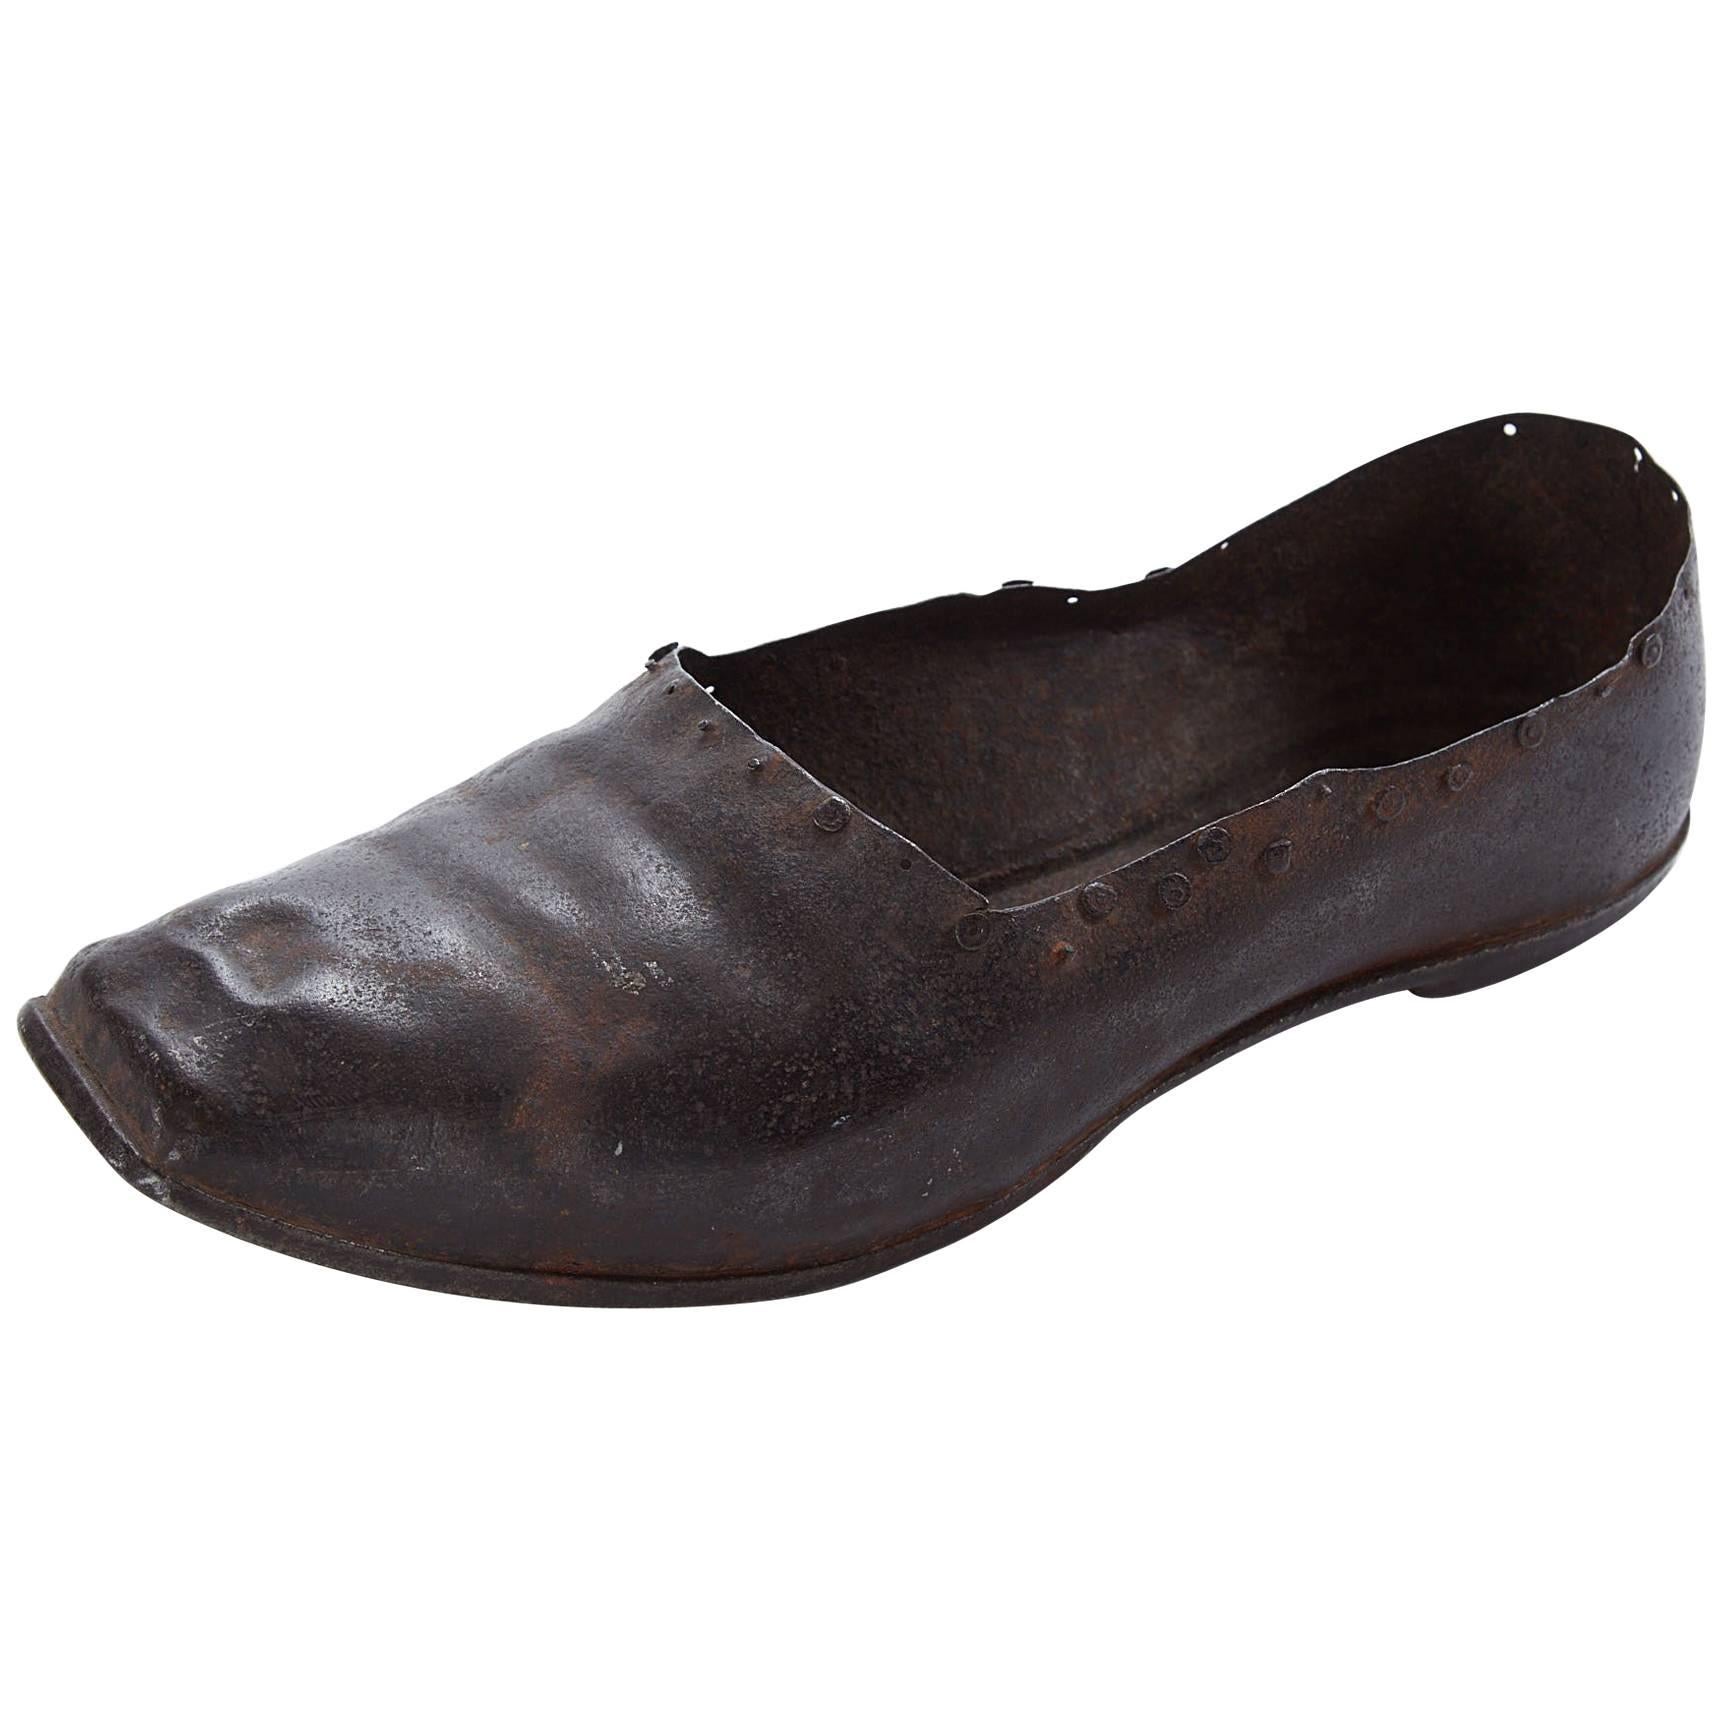 Handgeschmiedeter Eisen Schuh des späten 19. Jahrhunderts, wahrscheinlich ein Muster aus Cobblers im Angebot